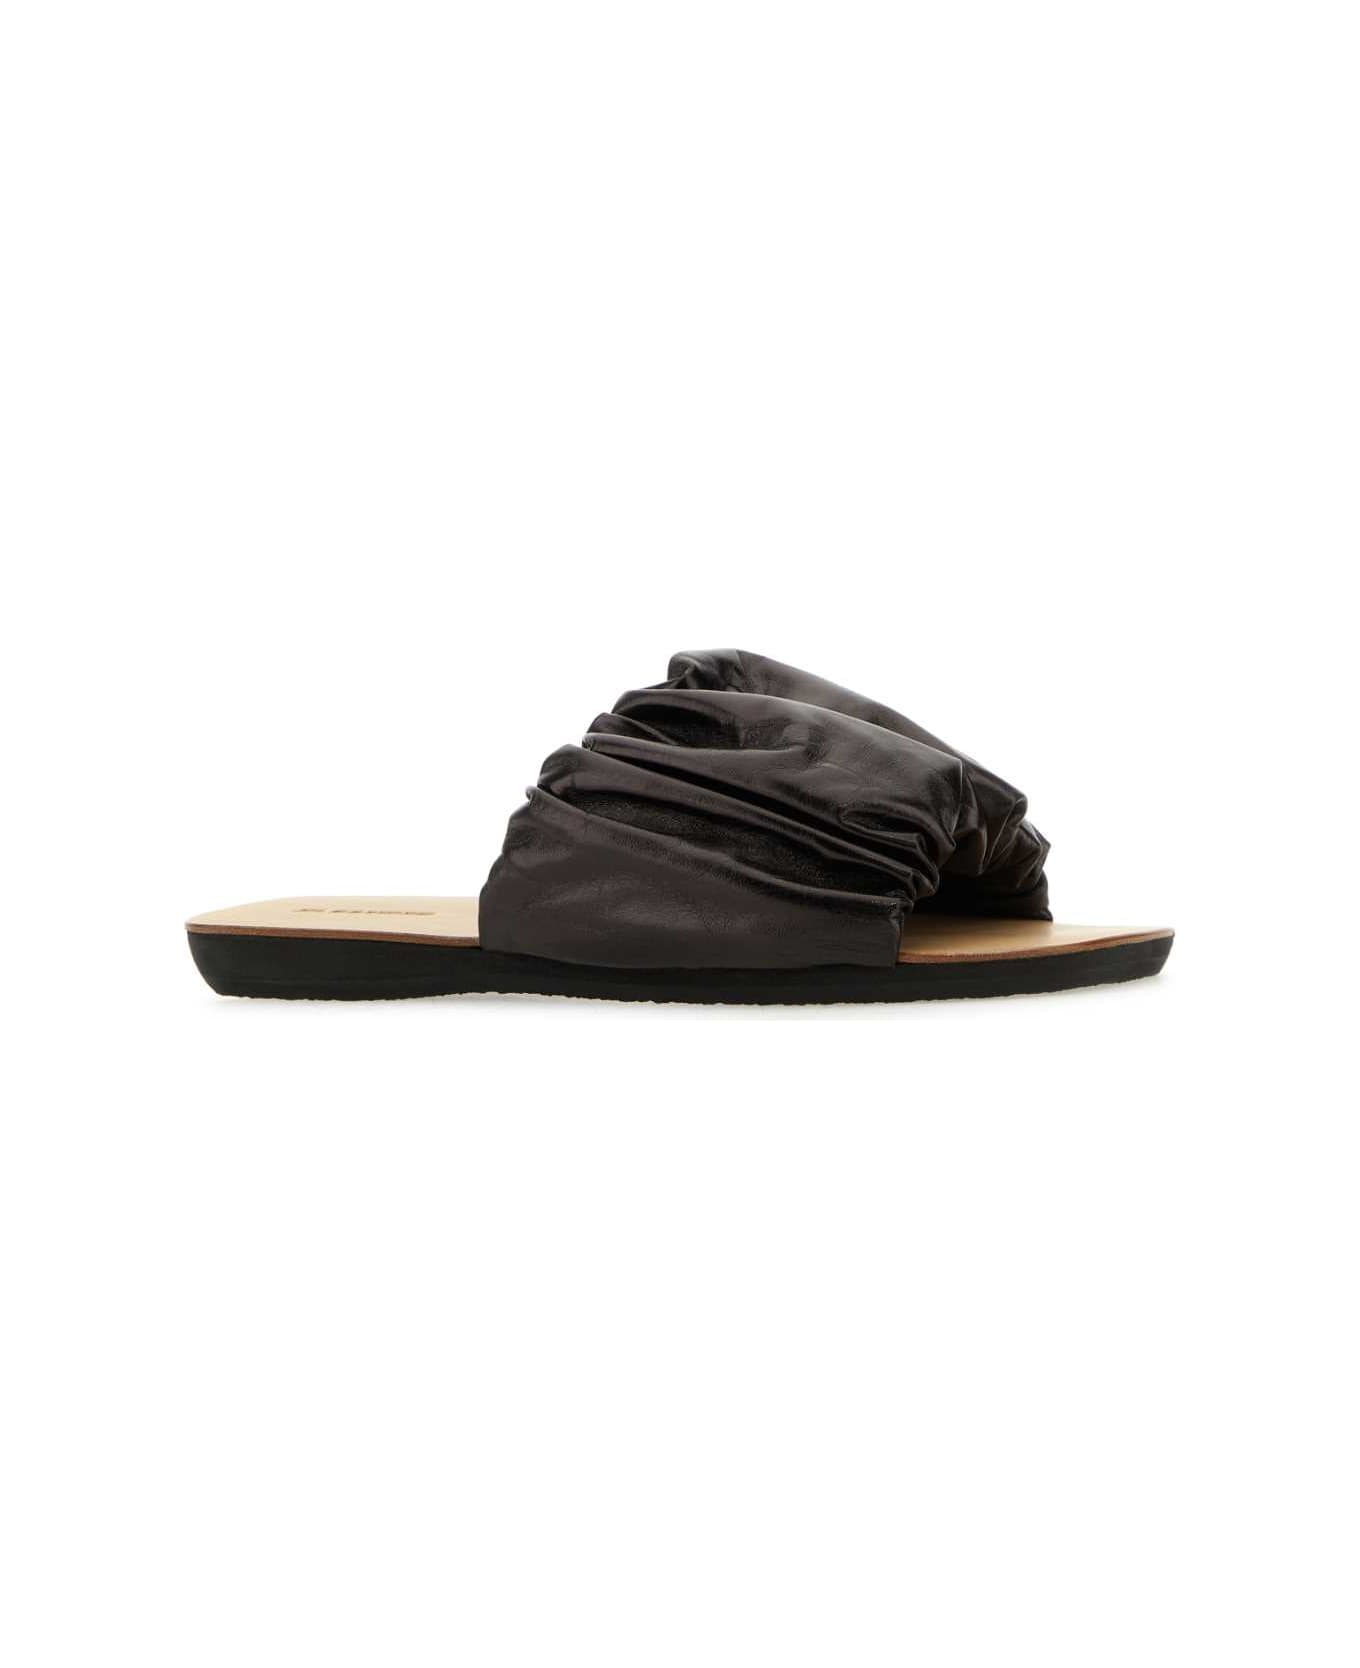 Jil Sander Dark Brown Leather Slippers - 001